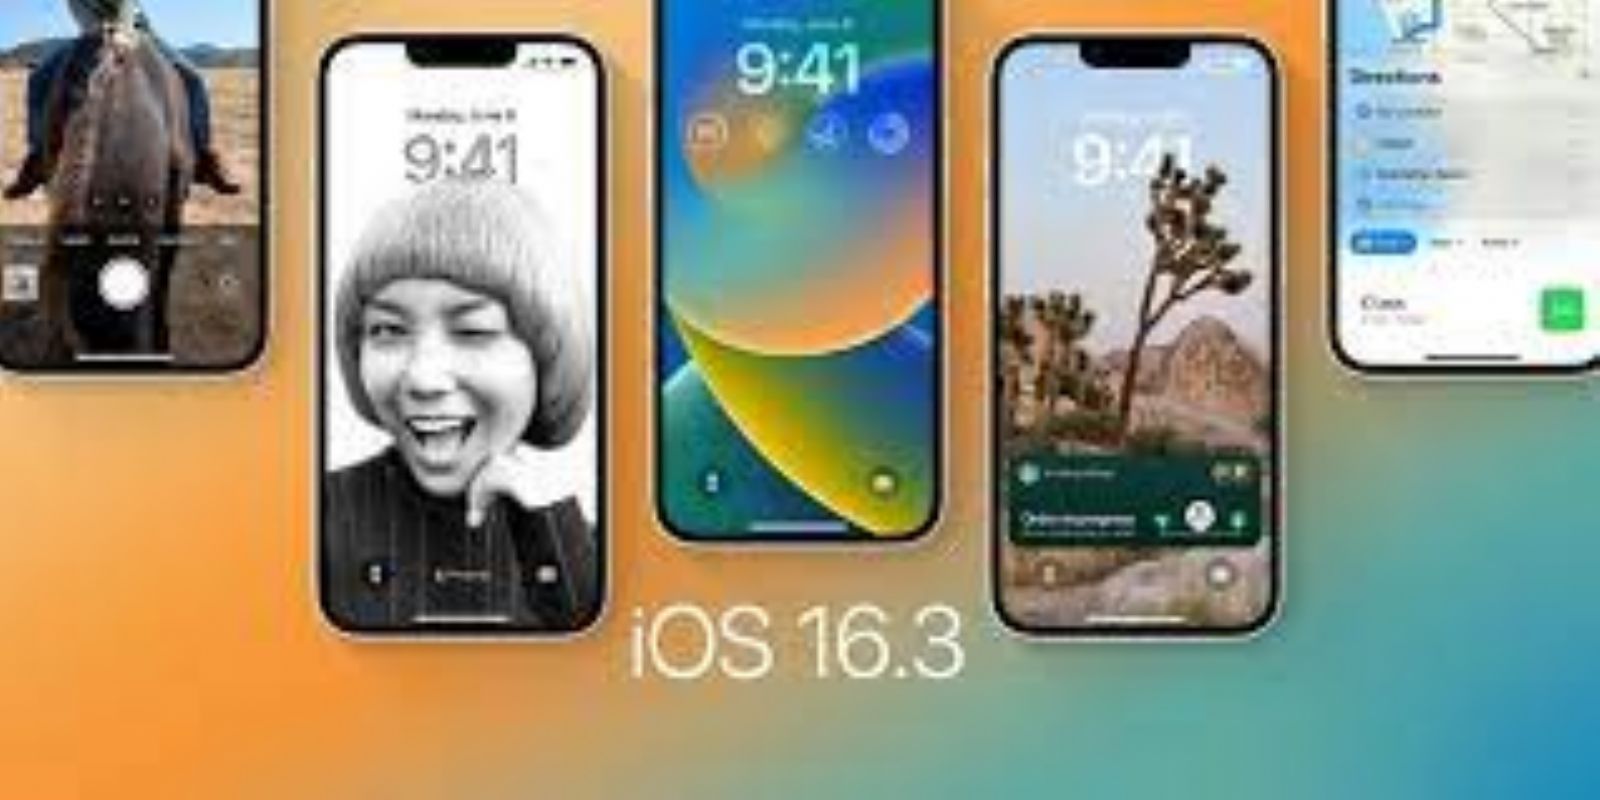   iOS 16.3   